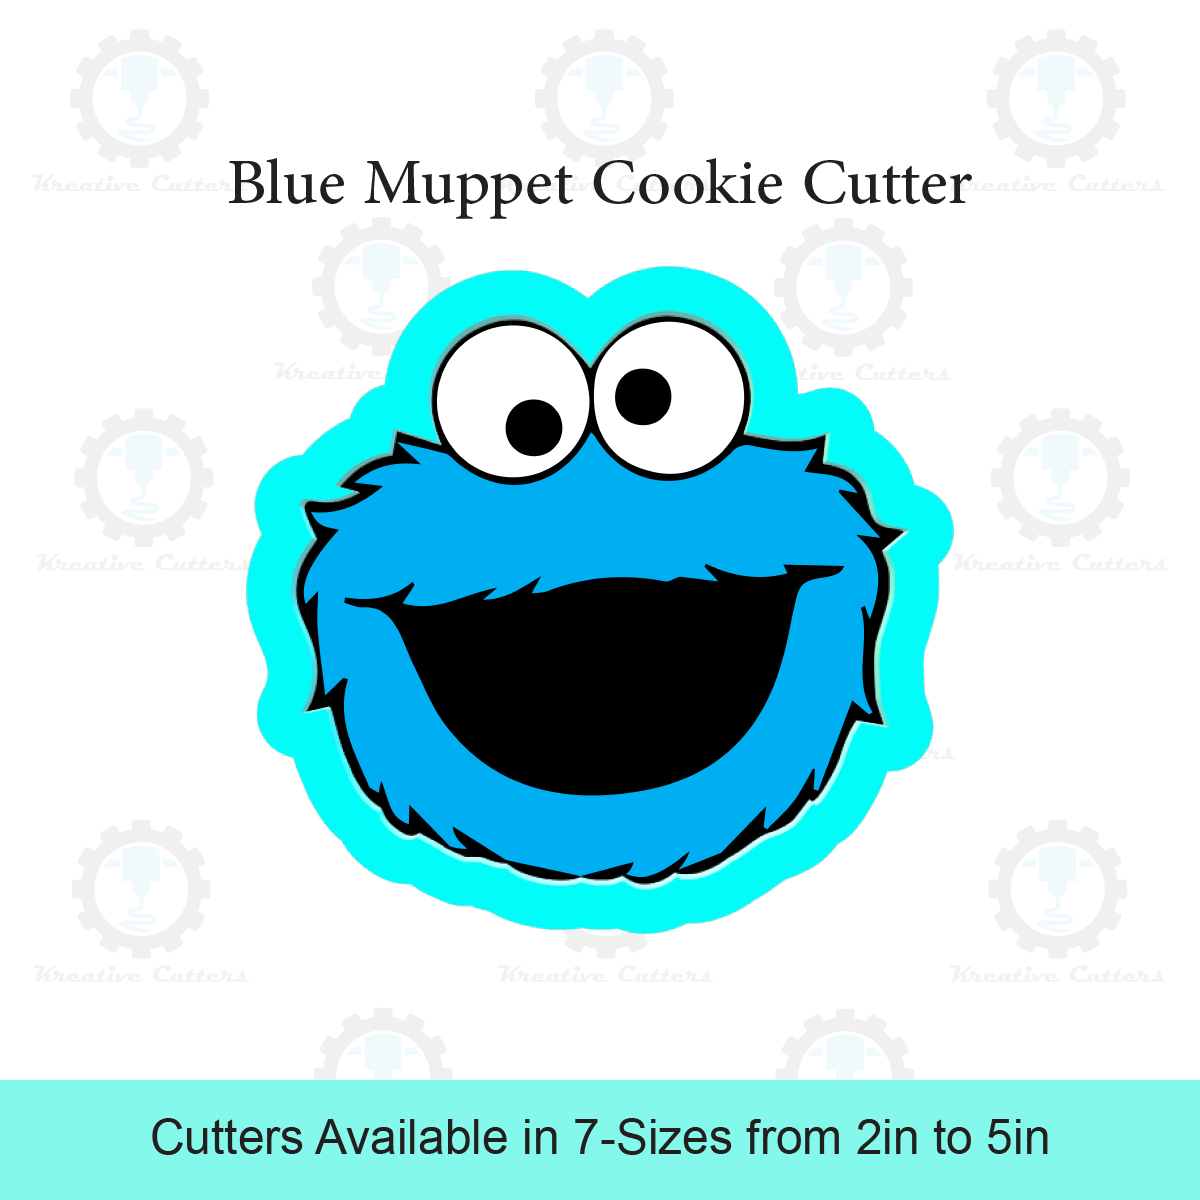 Blue Muppet Cookie Cutter